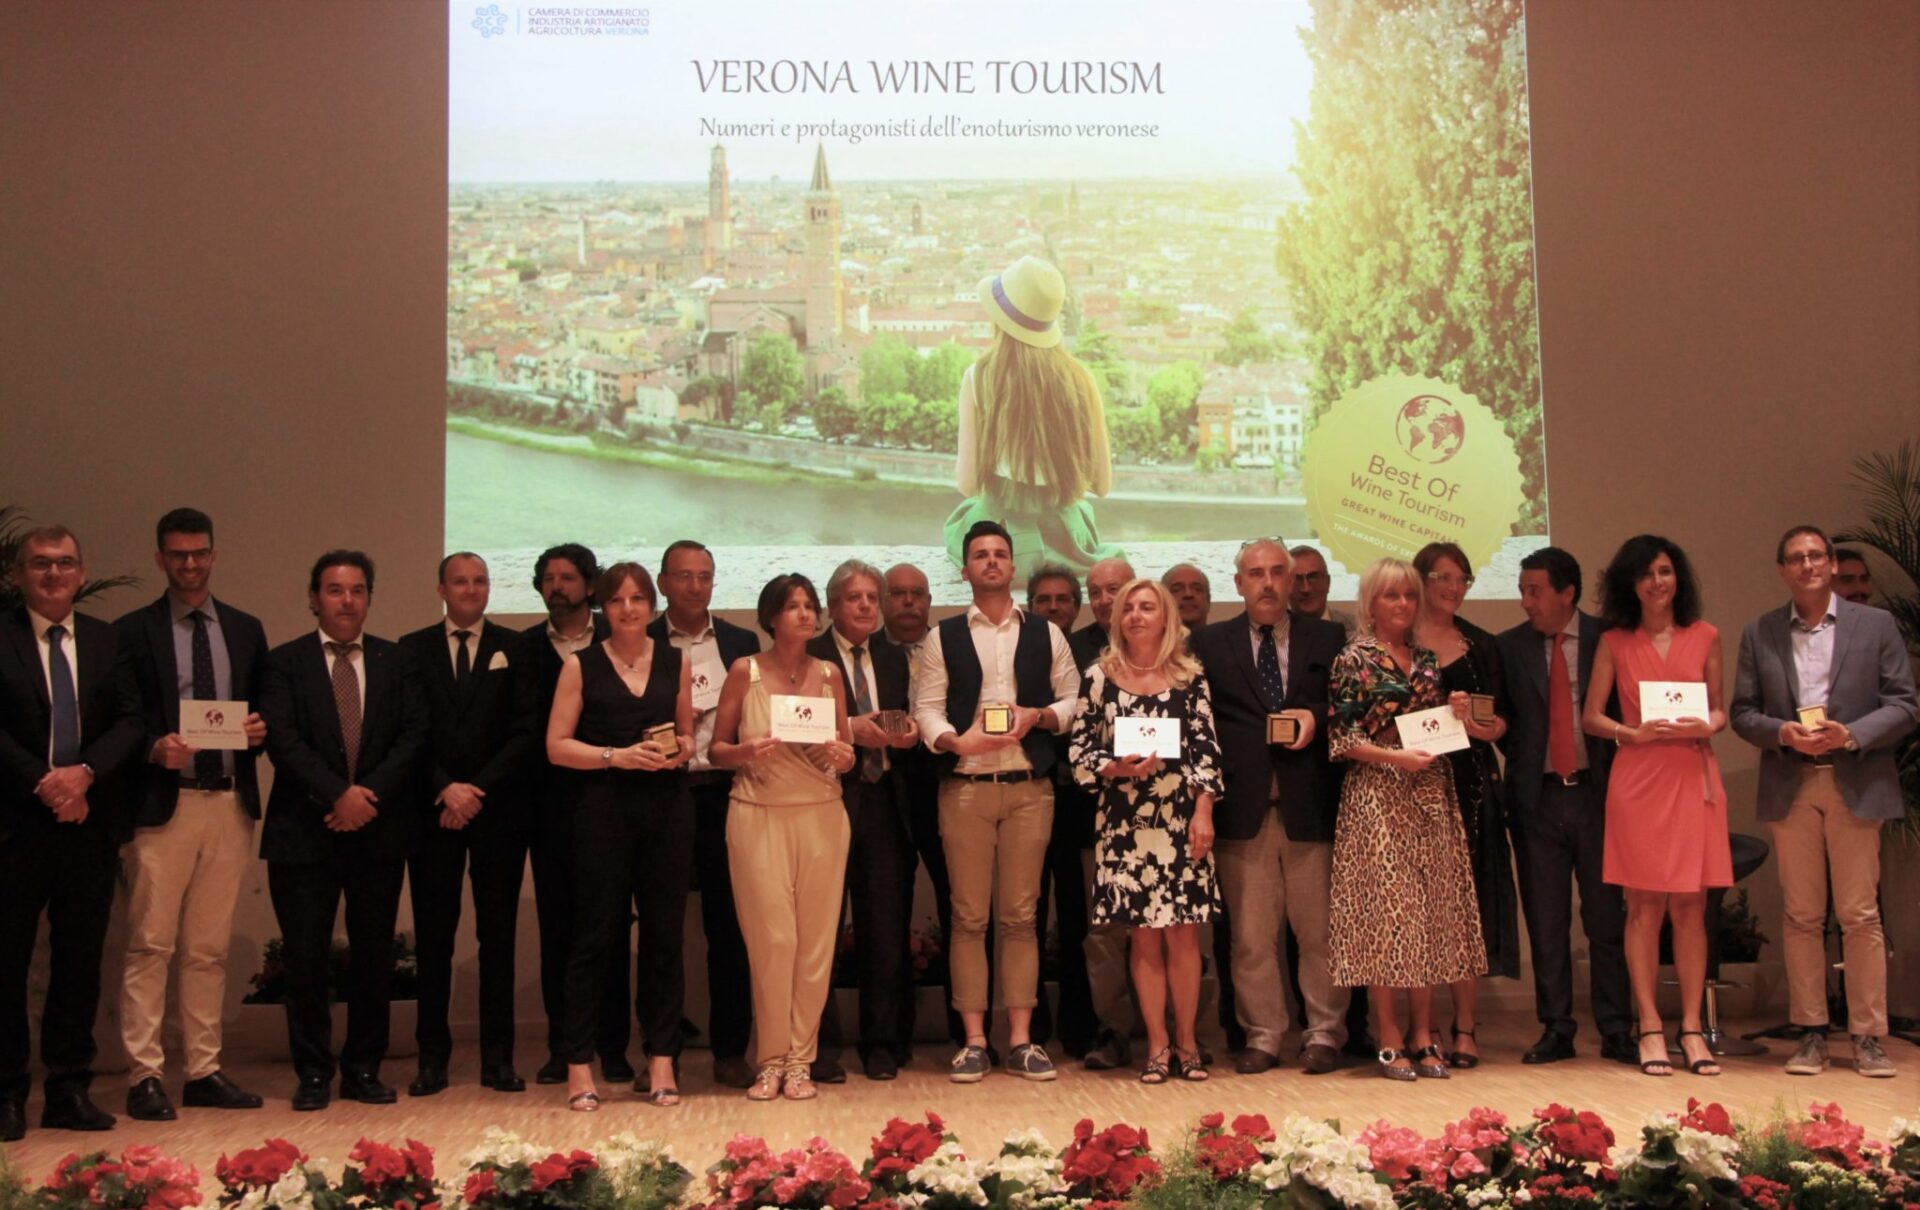 per best of wine tourism monte zovo è la miglior azienda veronese per le politiche sostenibili nell’enoturismo